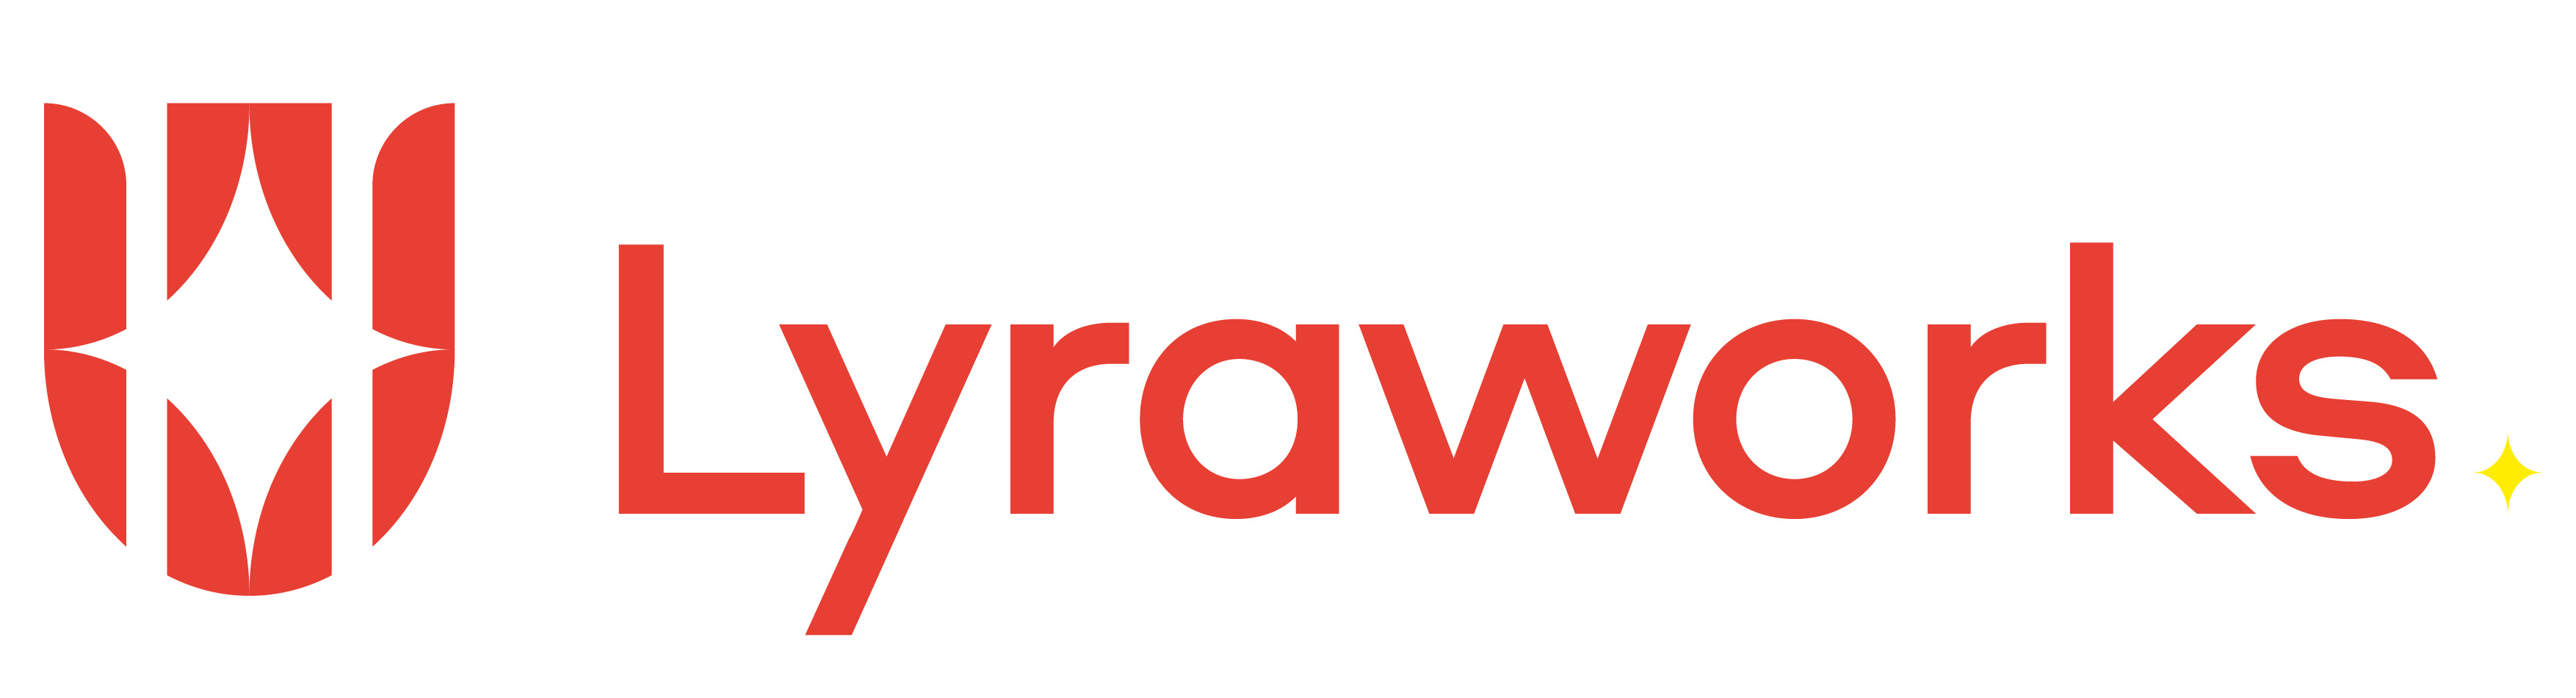 Trimarine logo